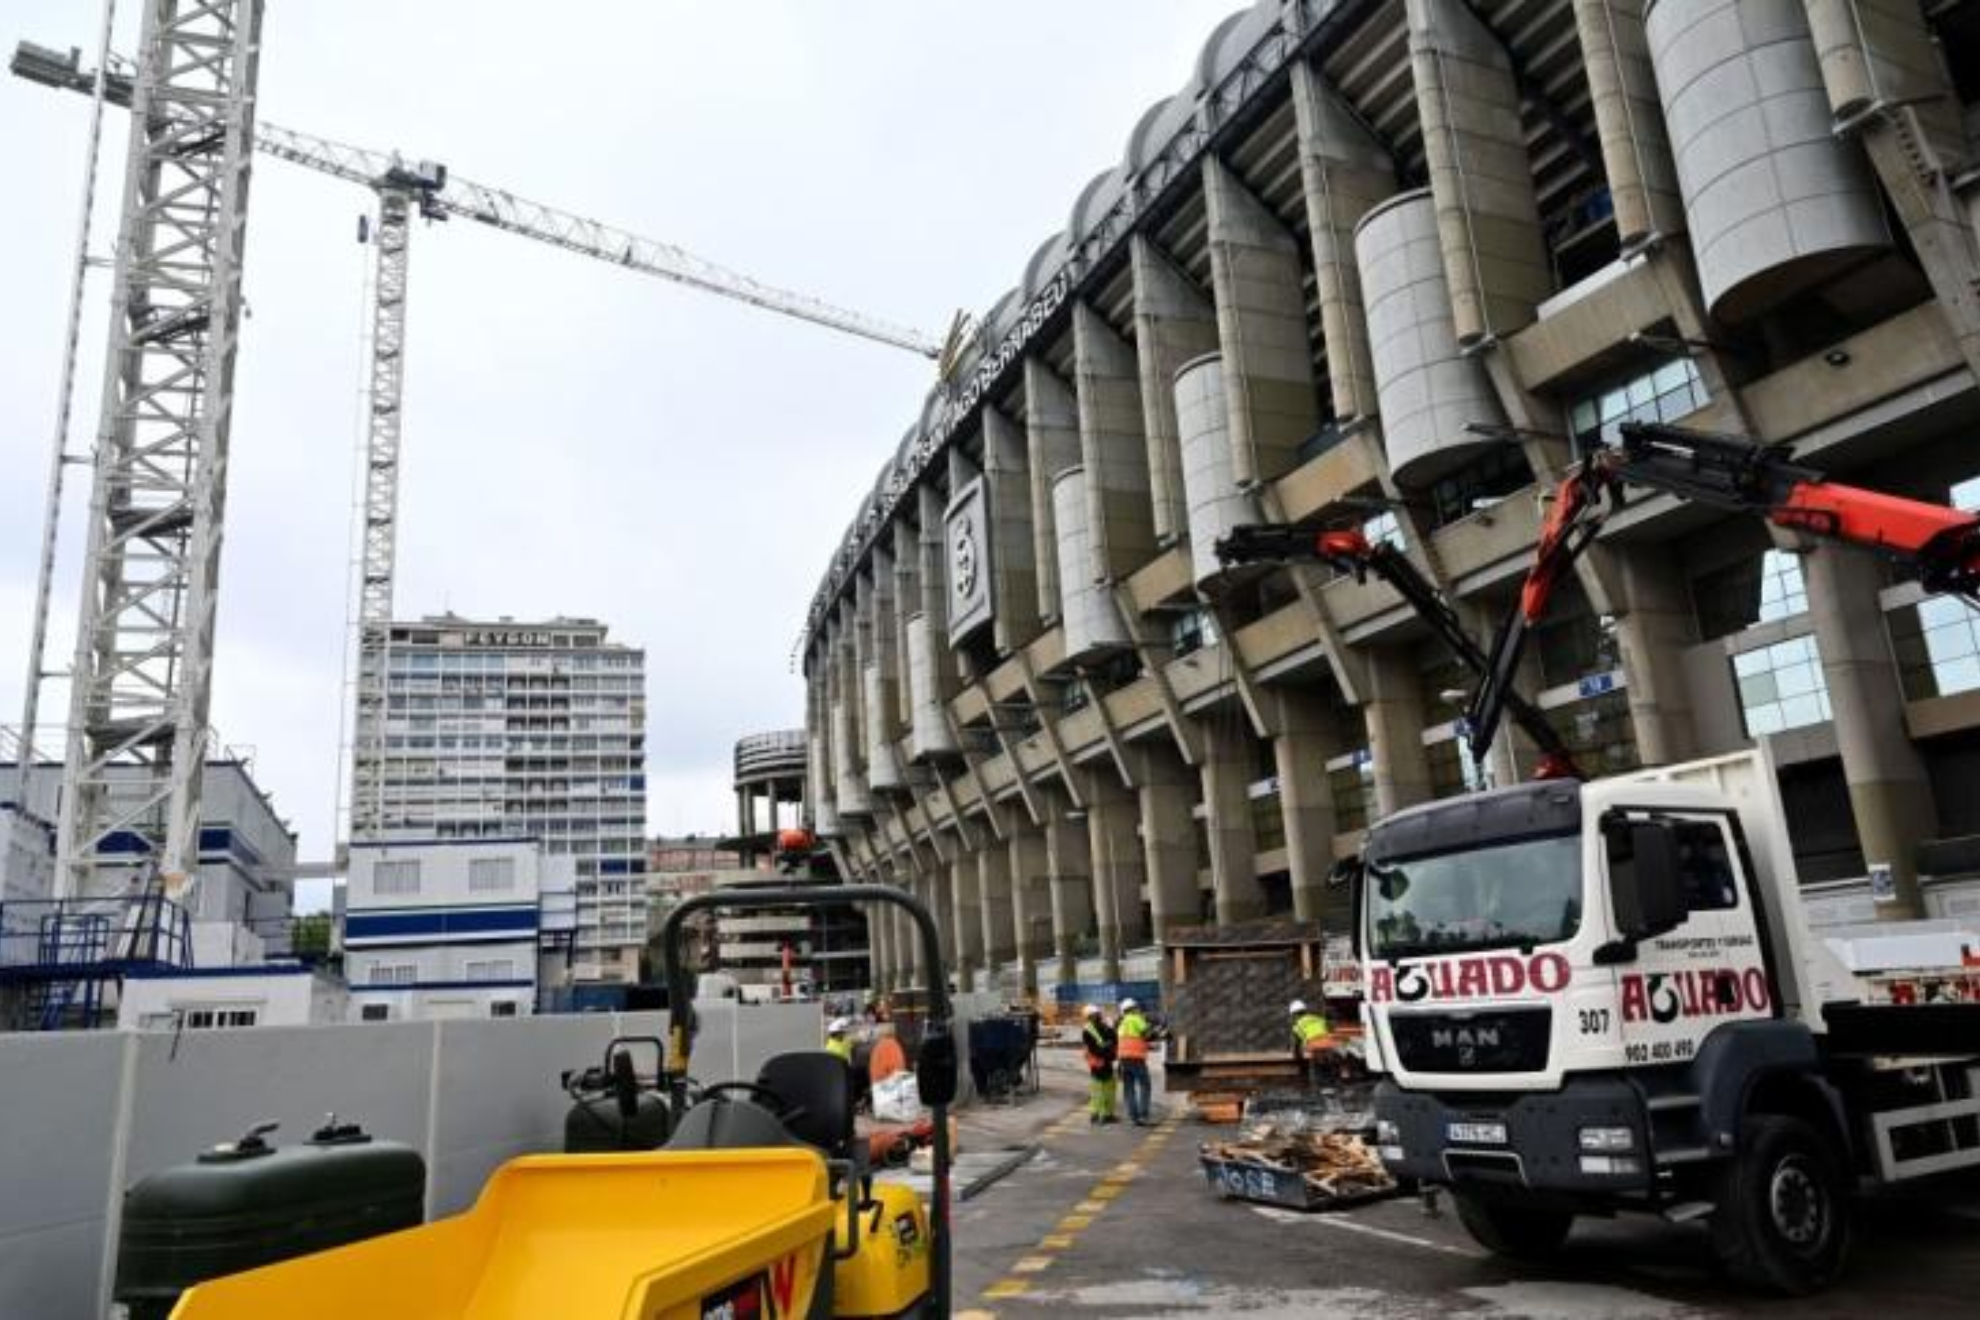 El Bernabu y el Camp Nou, separados por 100 millones: qu estadio ser ms caro?